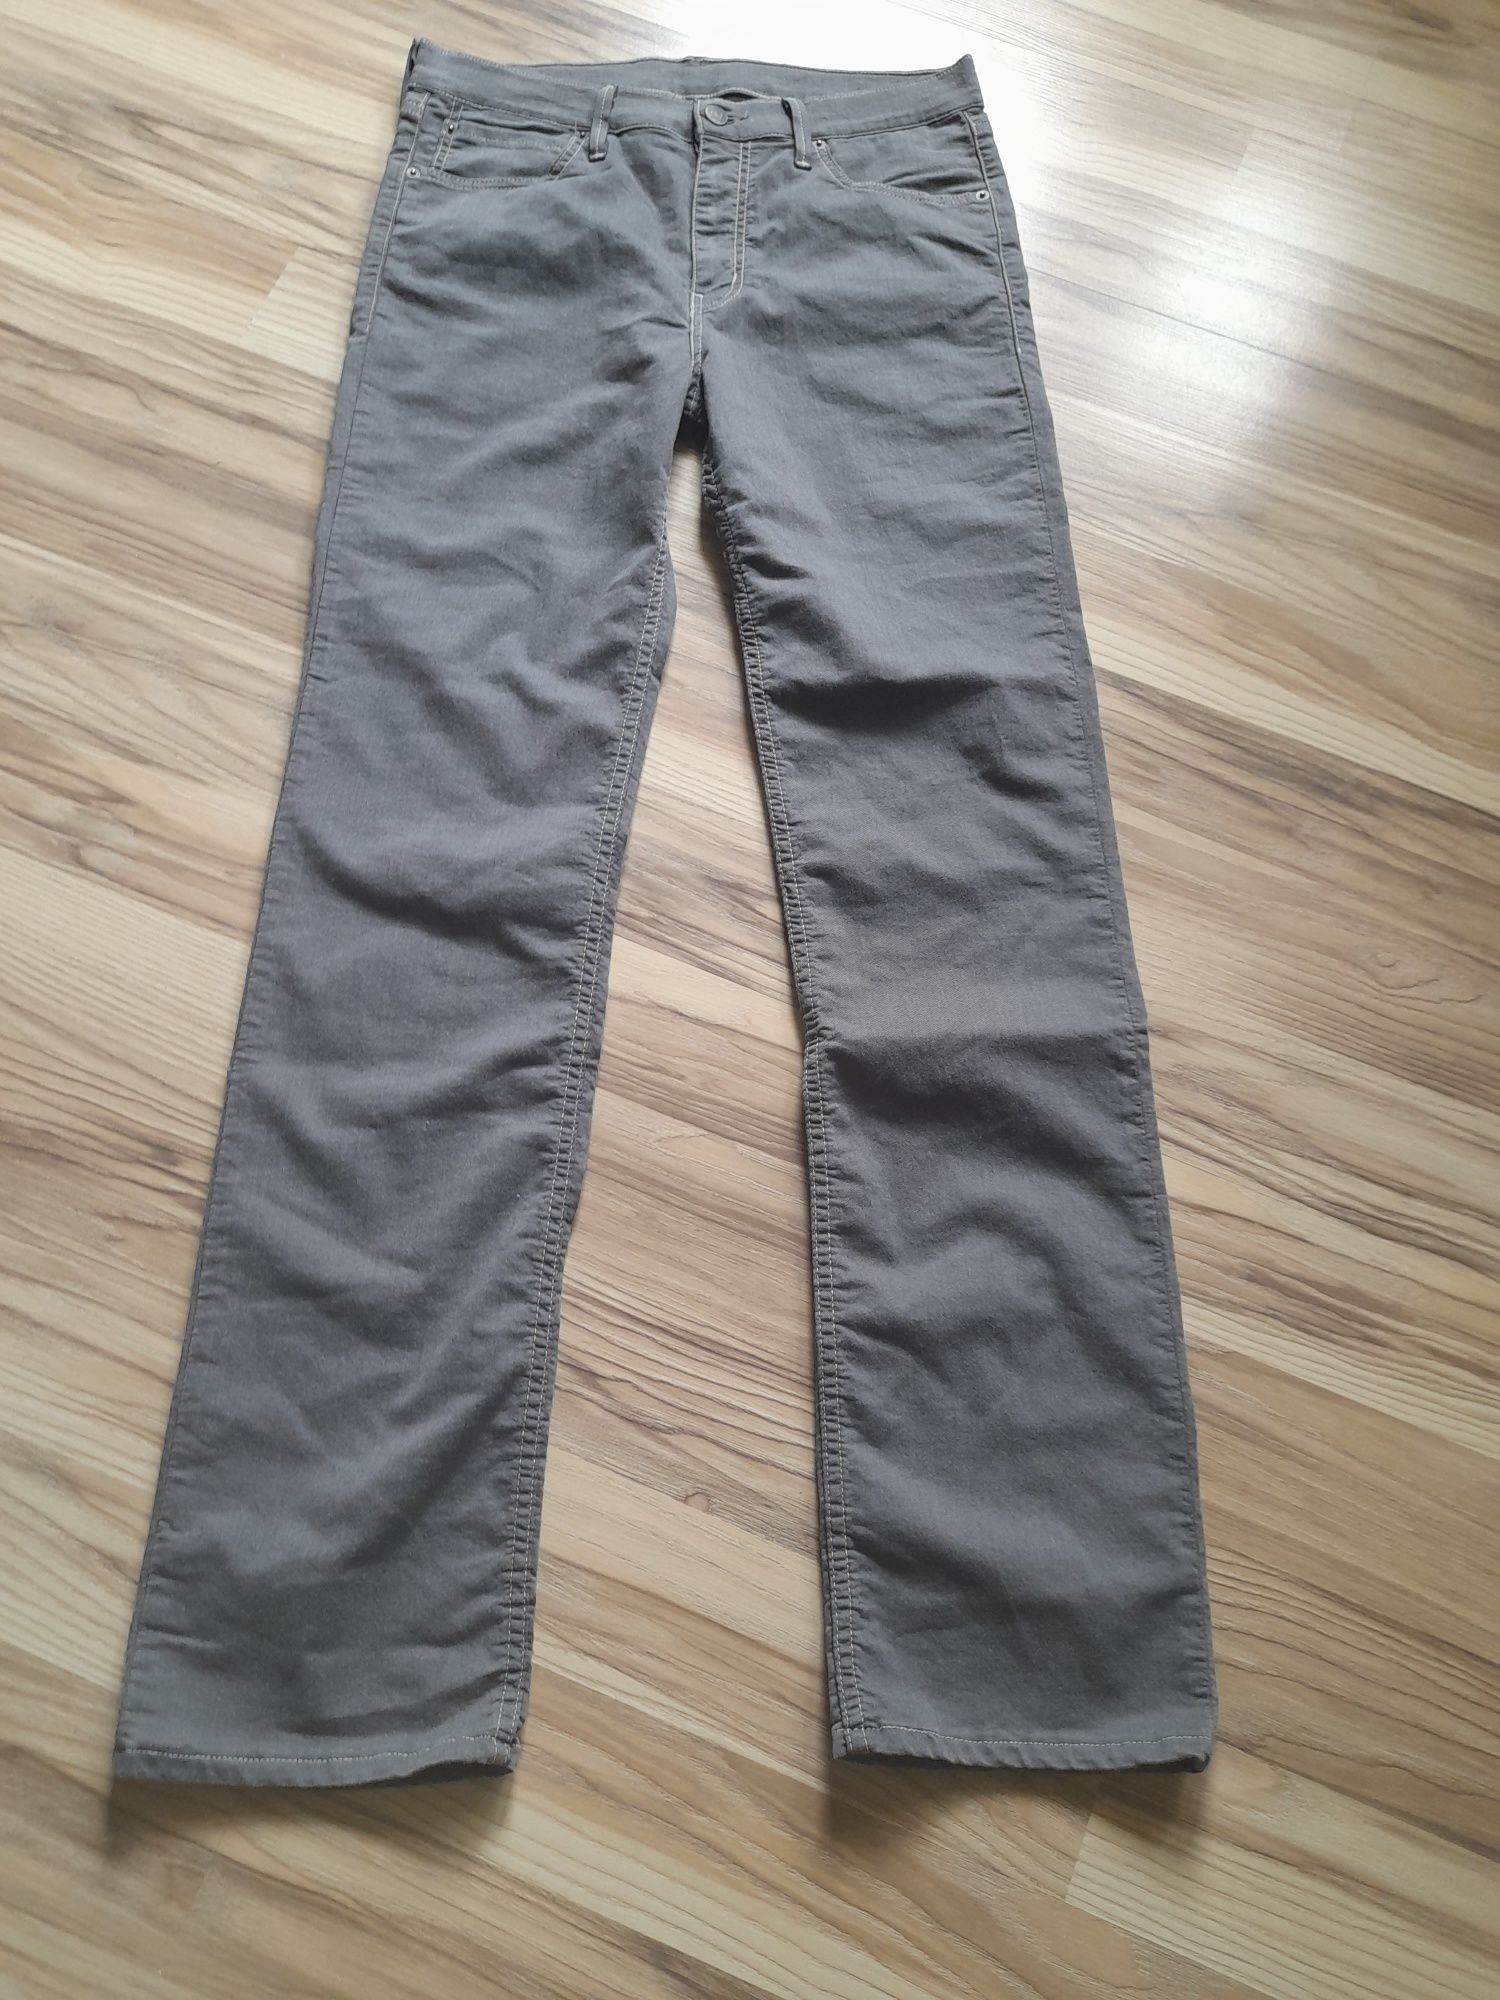 Spodnie męskie jeansowe 34/34